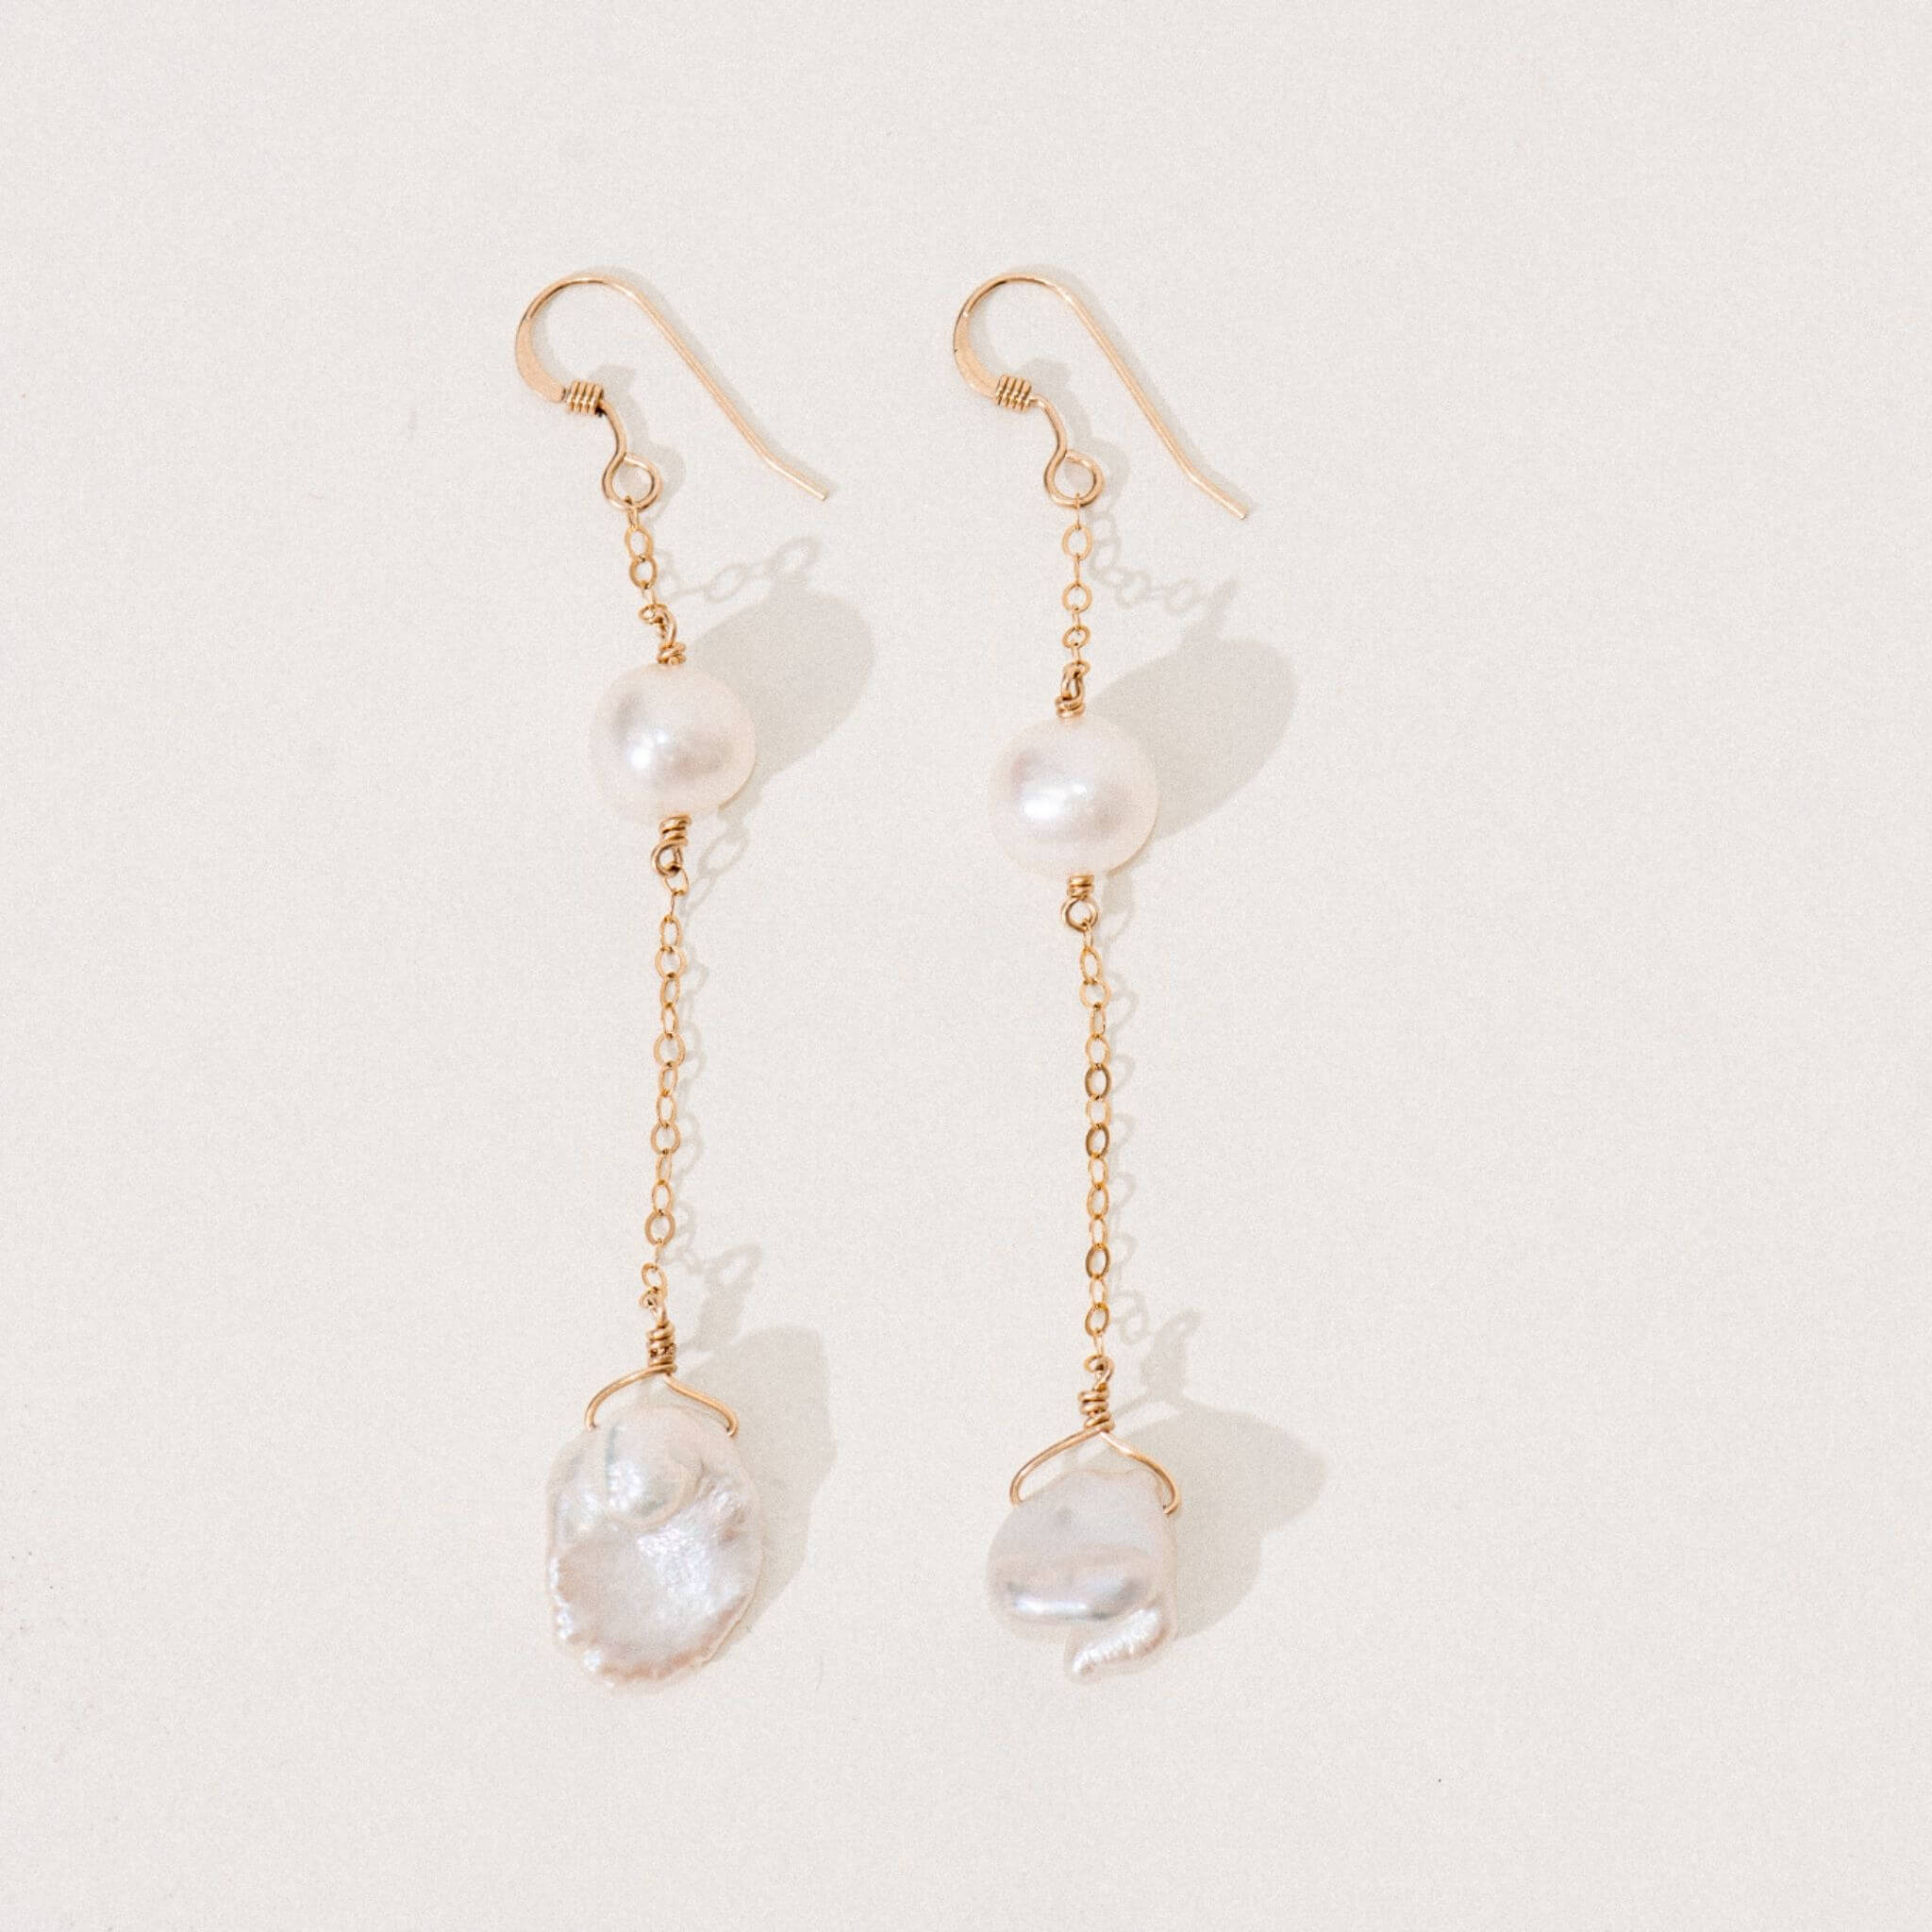 Alyssa Pearl Earrings